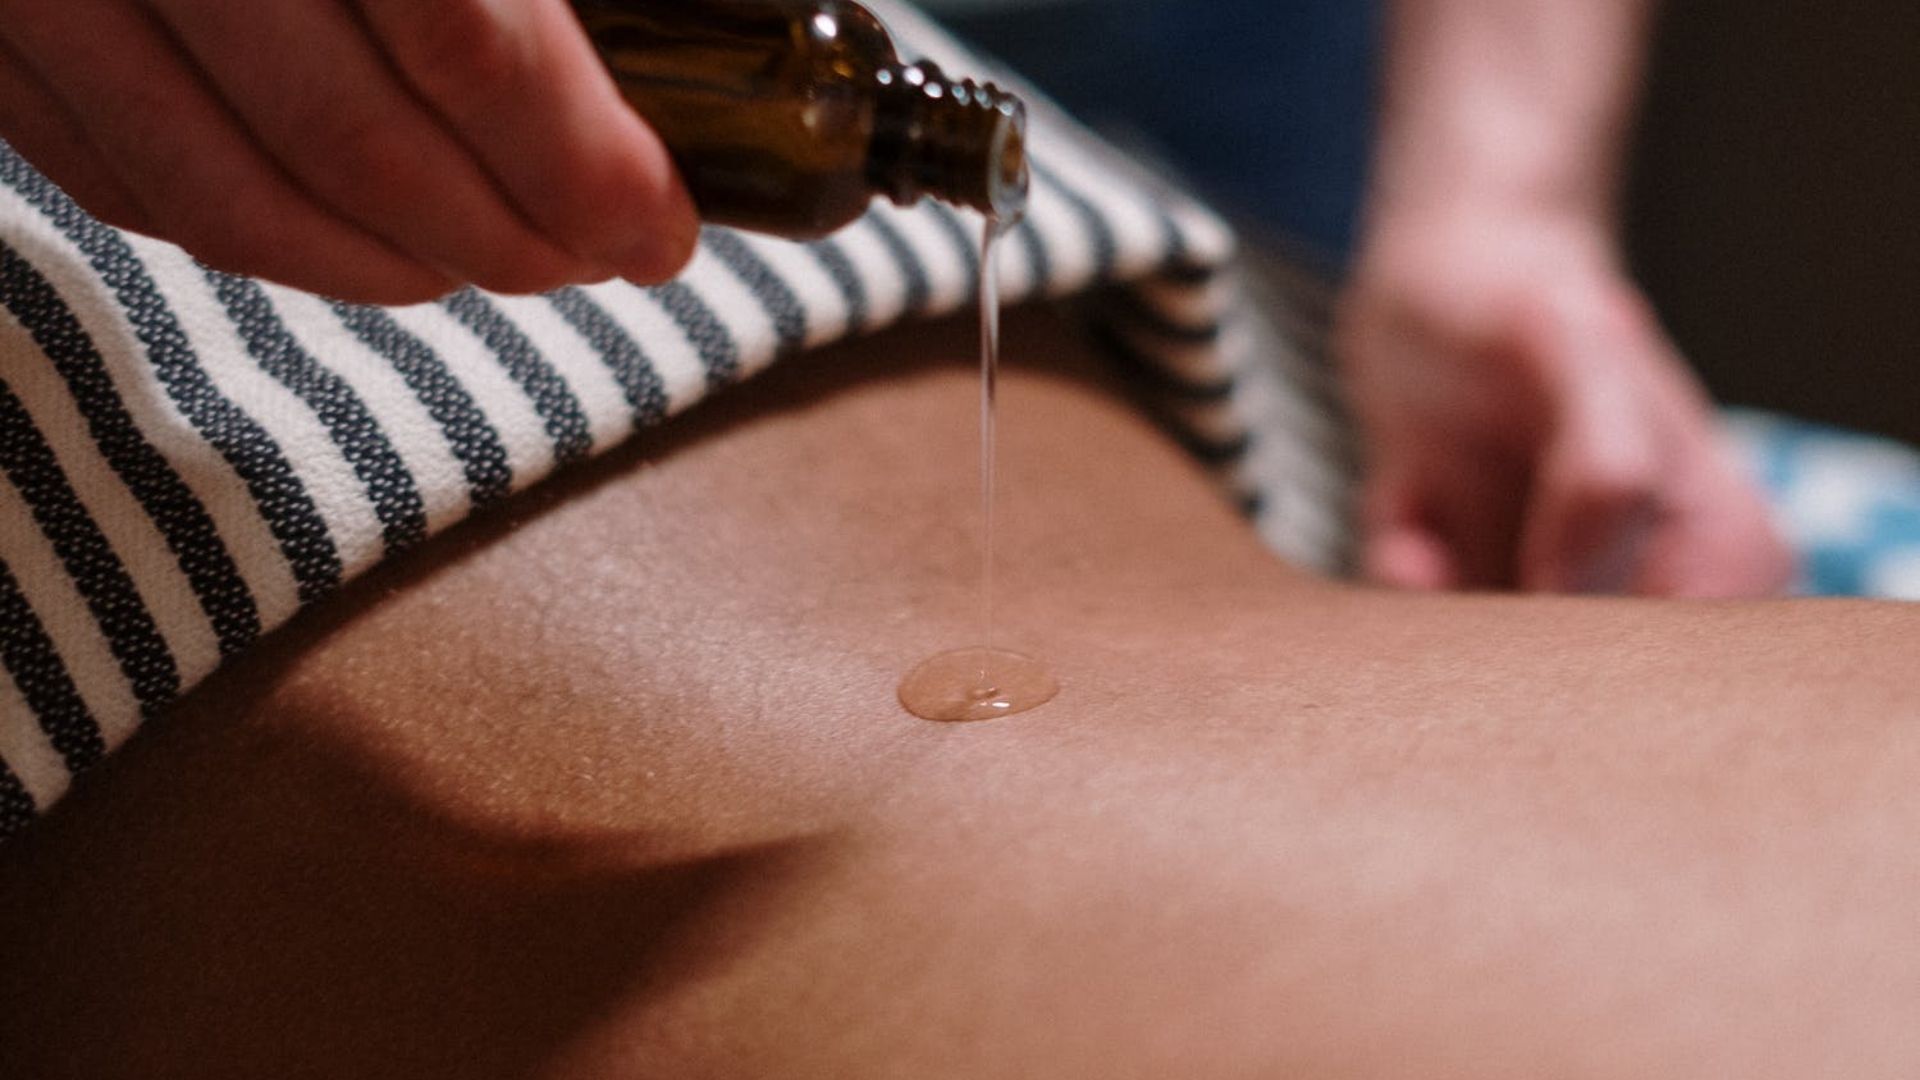 Une personne verse de l'huile de massage sur le dos d'une autre personne.